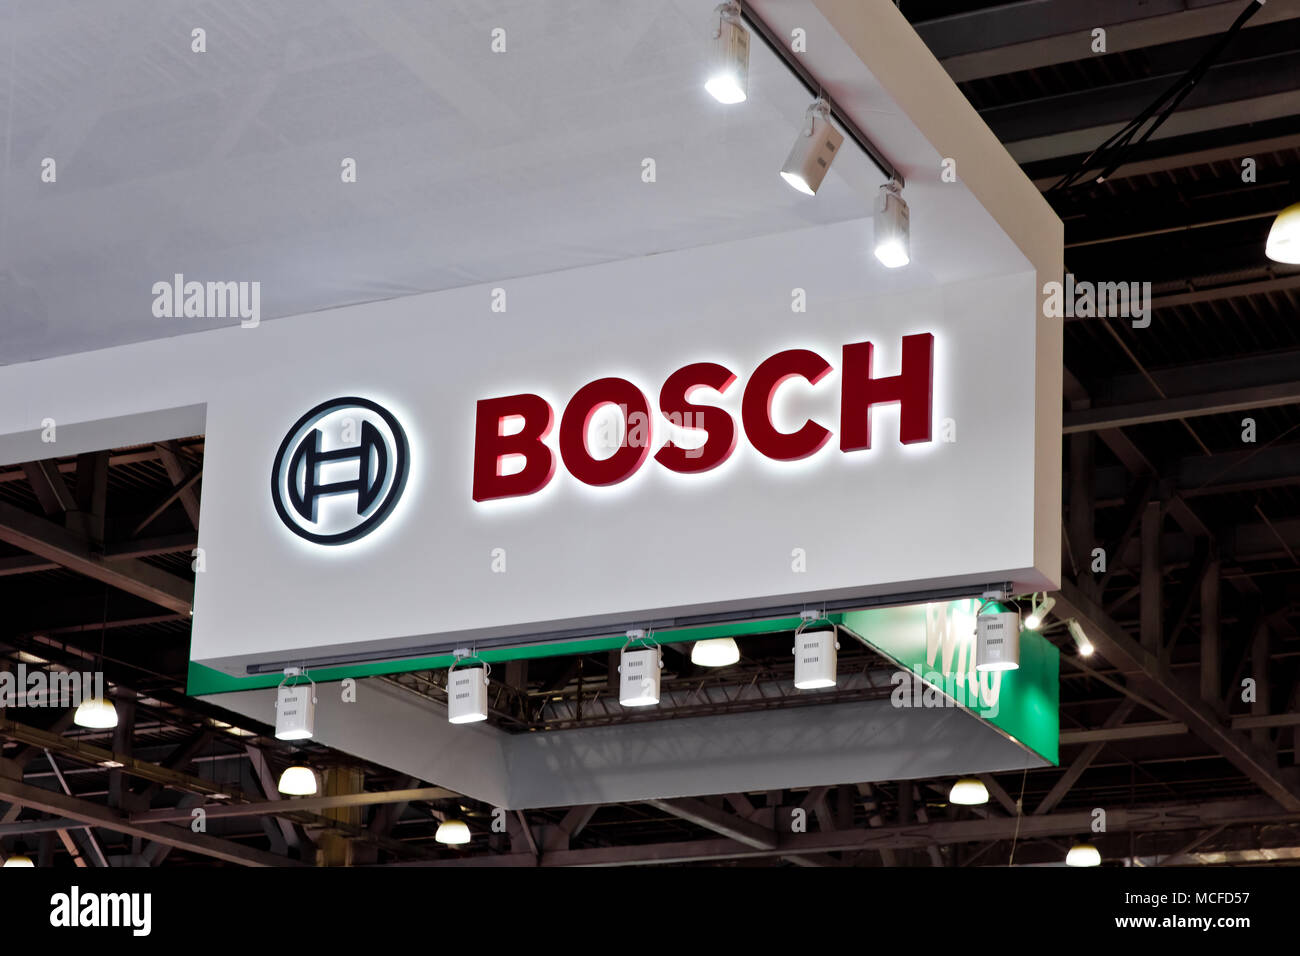 Logotipo de Bosch empresa cartel en la pared. La multinacional alemana Bosch es una empresa de electrónica e ingeniería Foto de stock